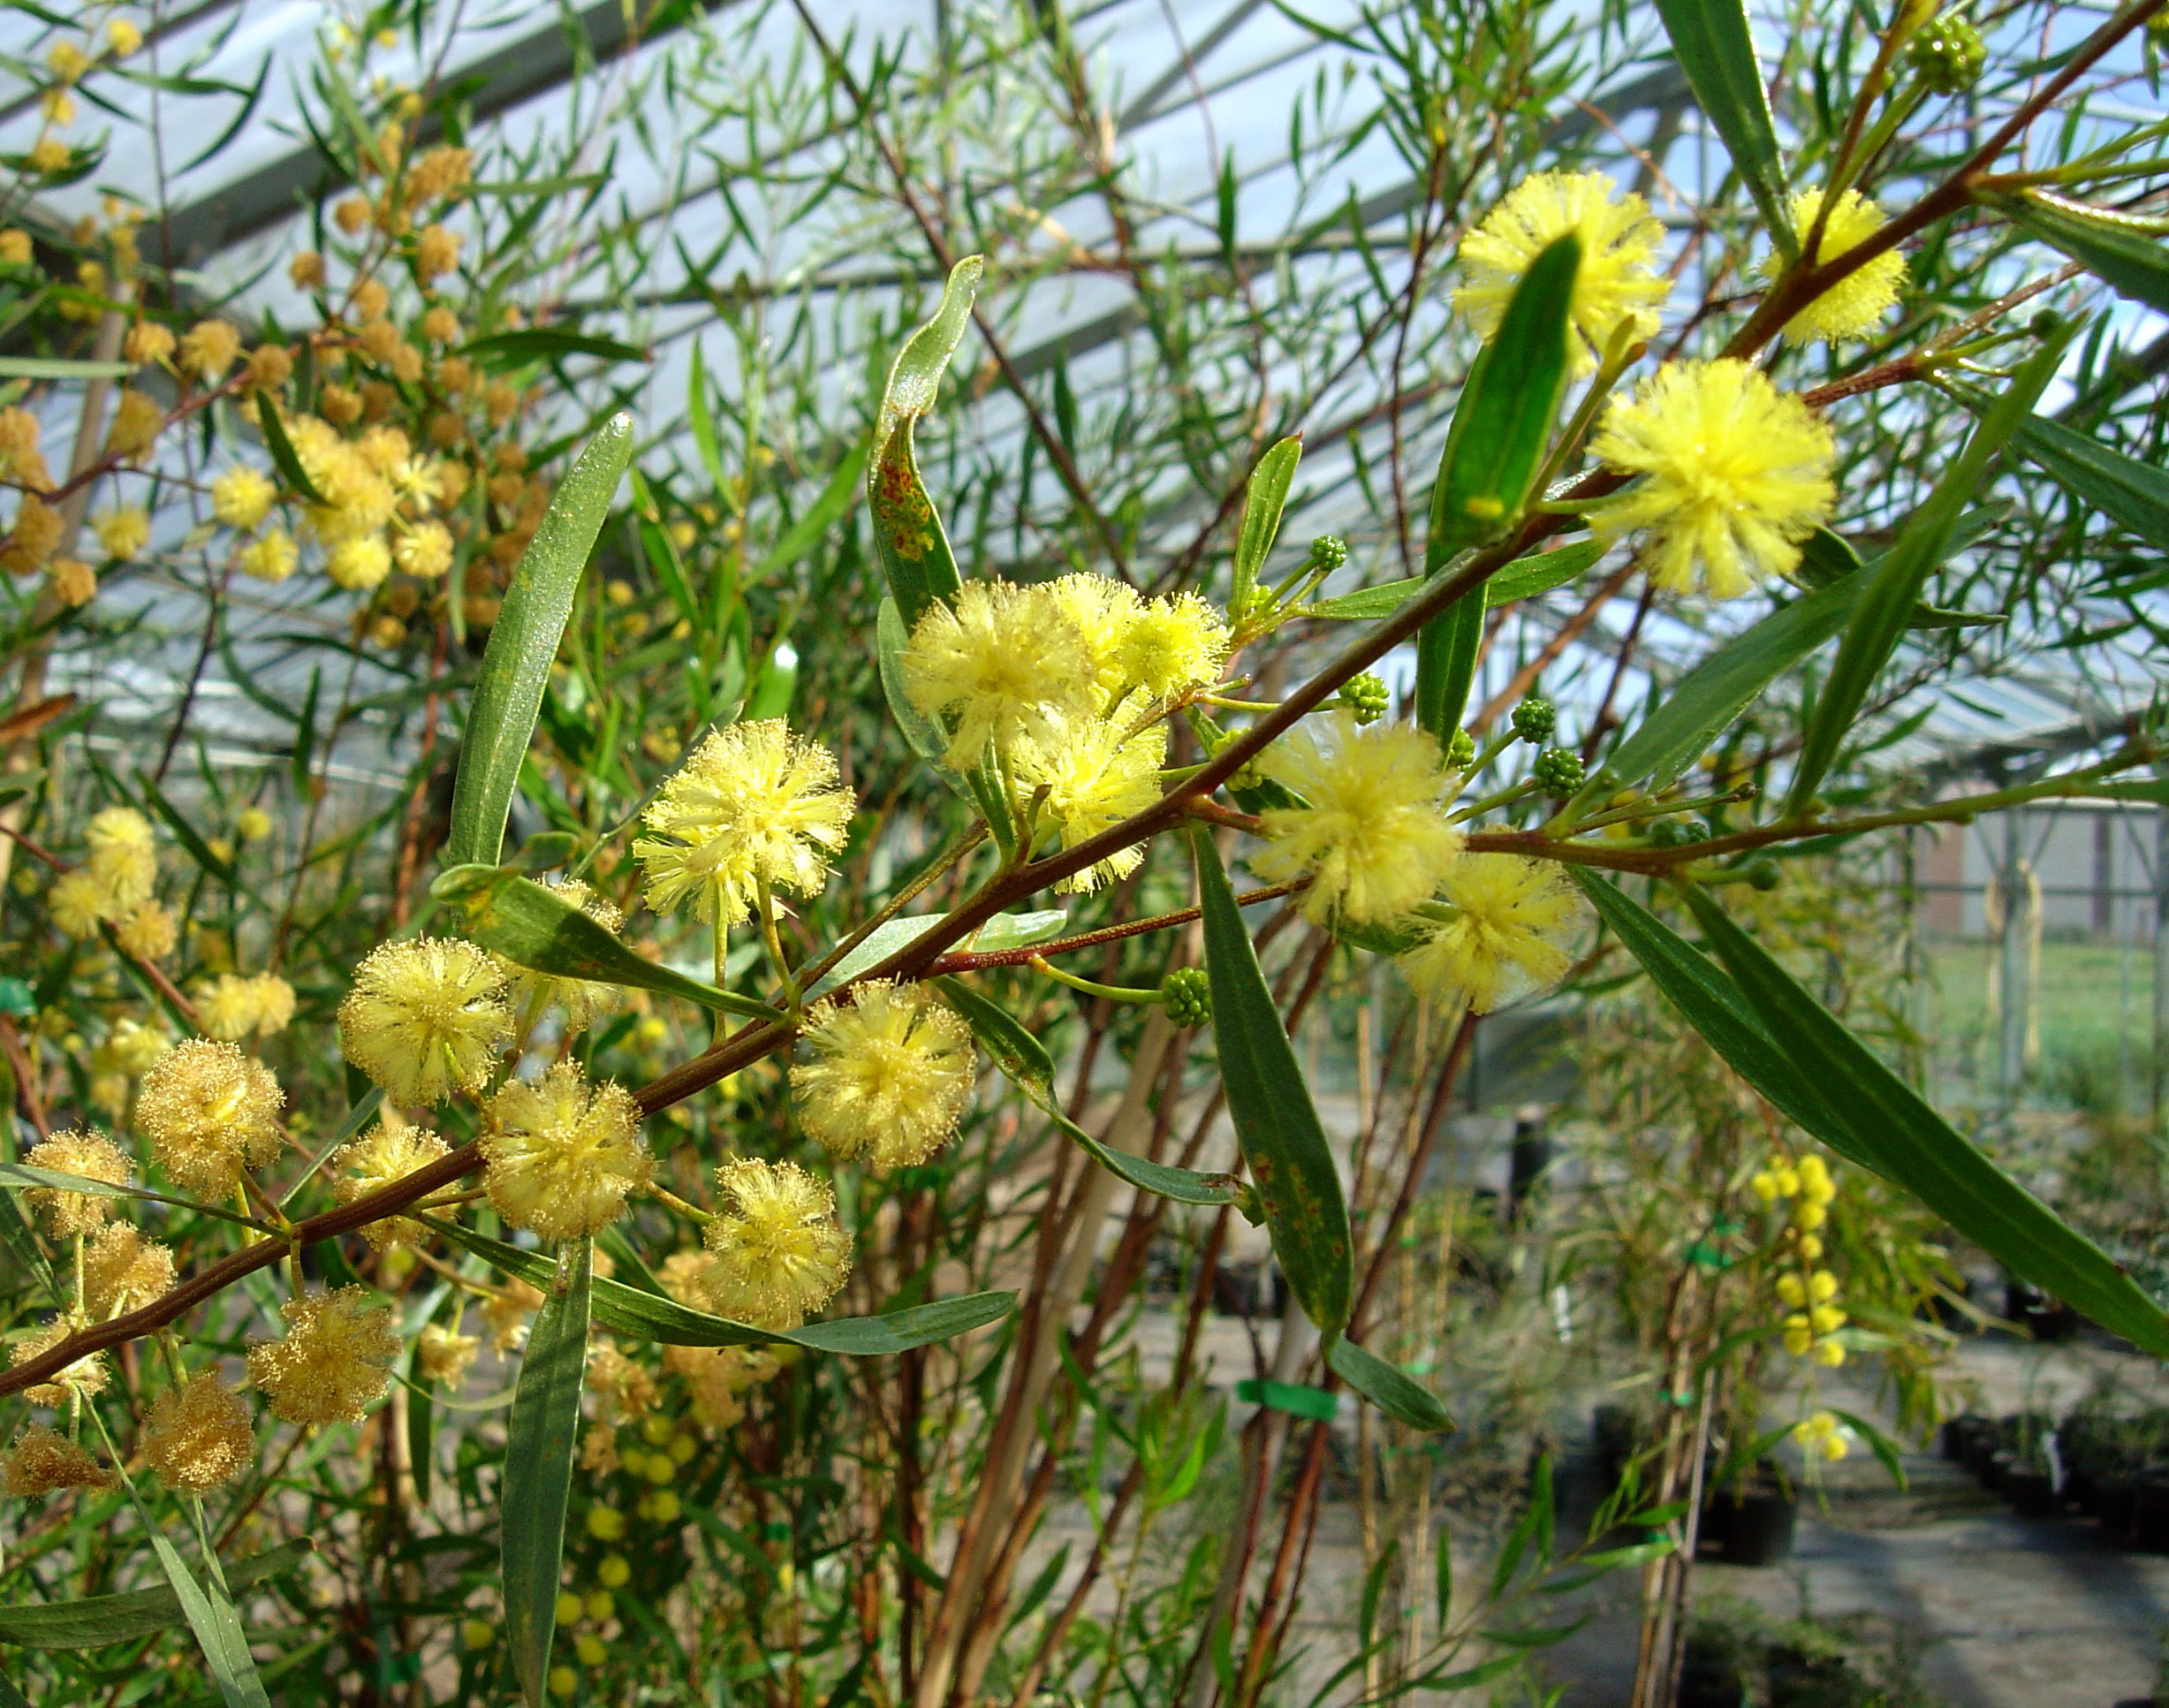 Acacia dodonaeifolia